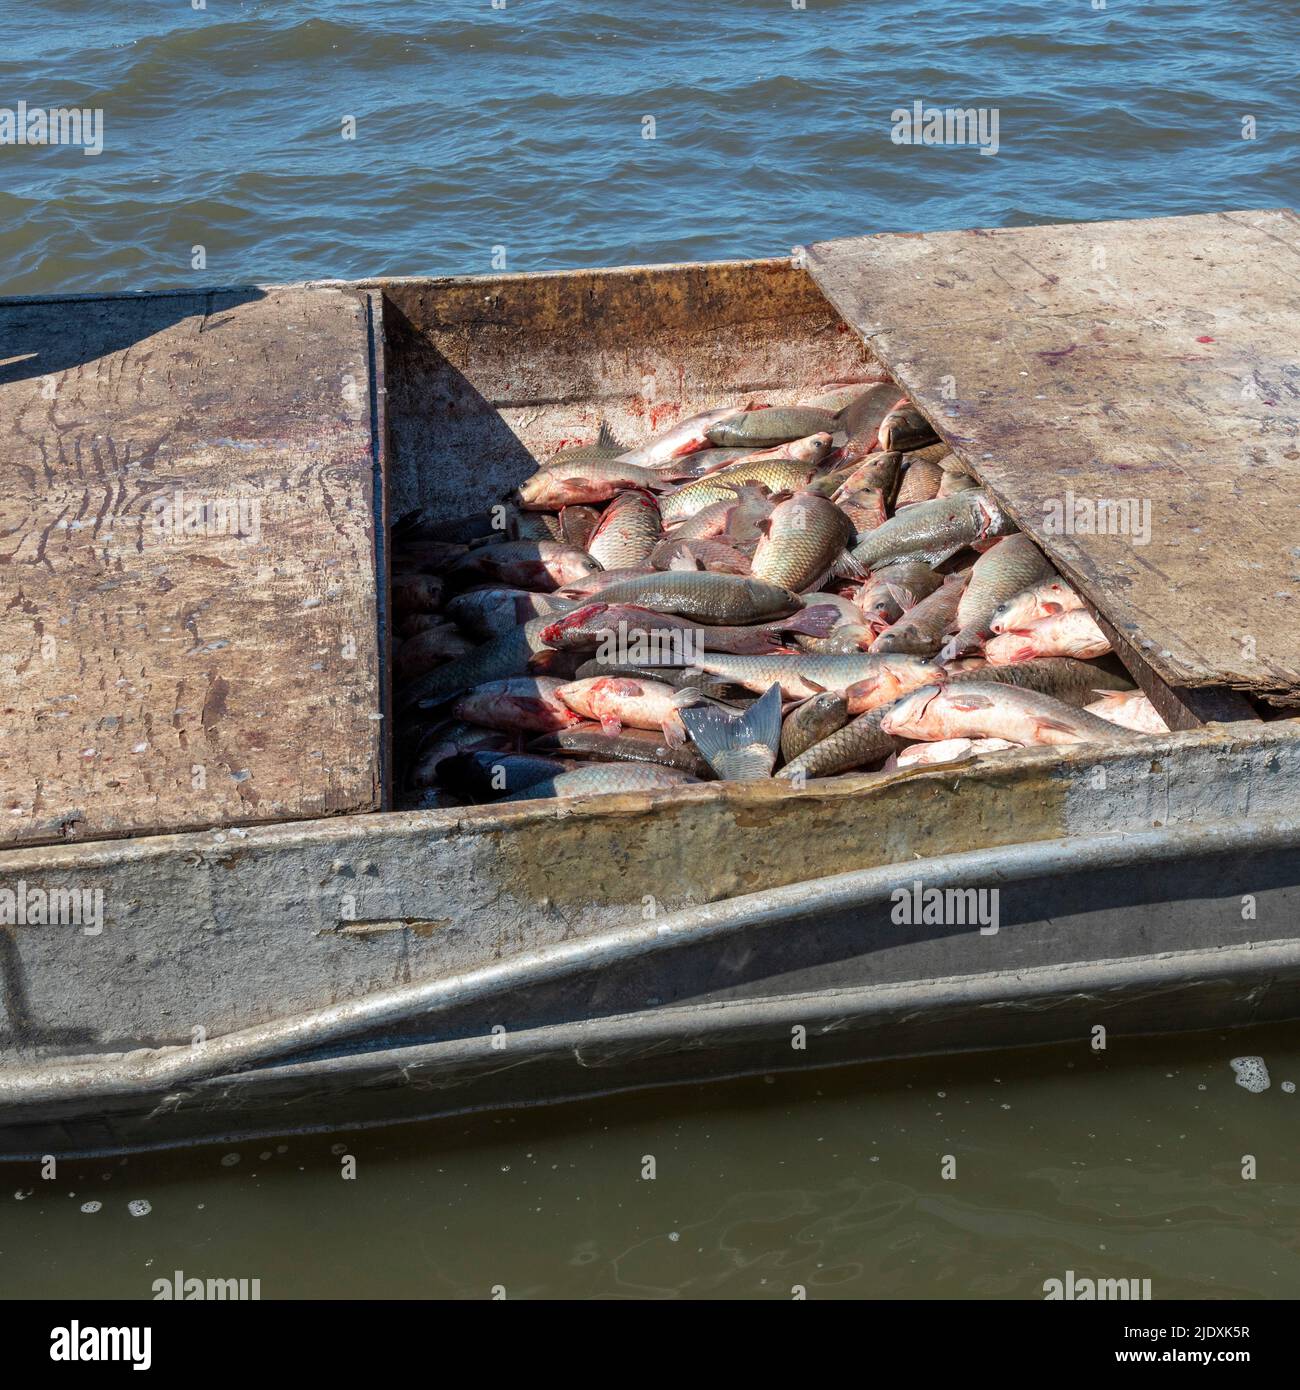 Peoria, Illinois - Ein Fischerboat auf dem Illinois River mit der Ernte von invasiven asiatischen Karpfen, vor allem der Silberkarpfen (Hypophthalmichthys molitrix). Stockfoto